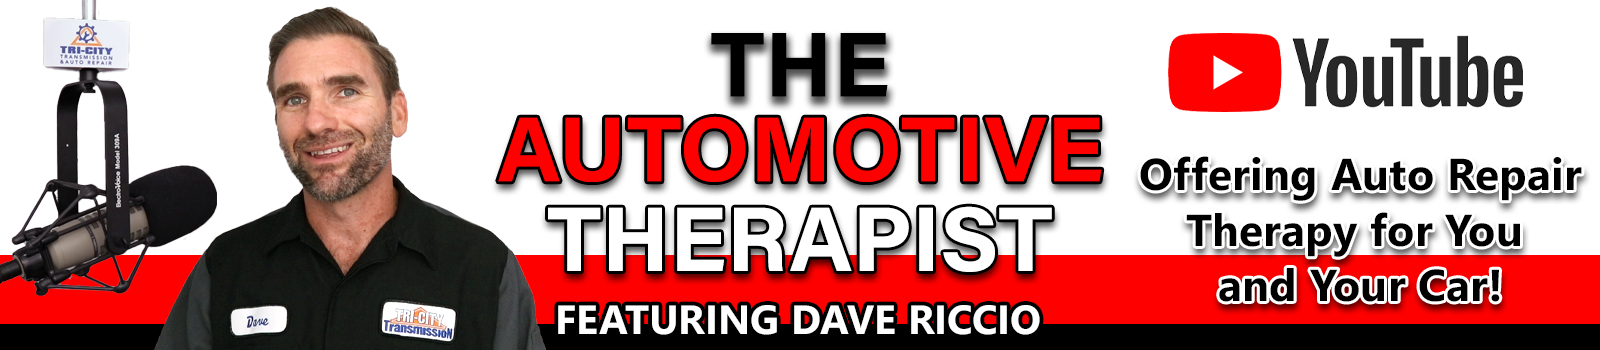 Dave Riccio The Automotive Therapist | Auto Repair YouTube Podcast